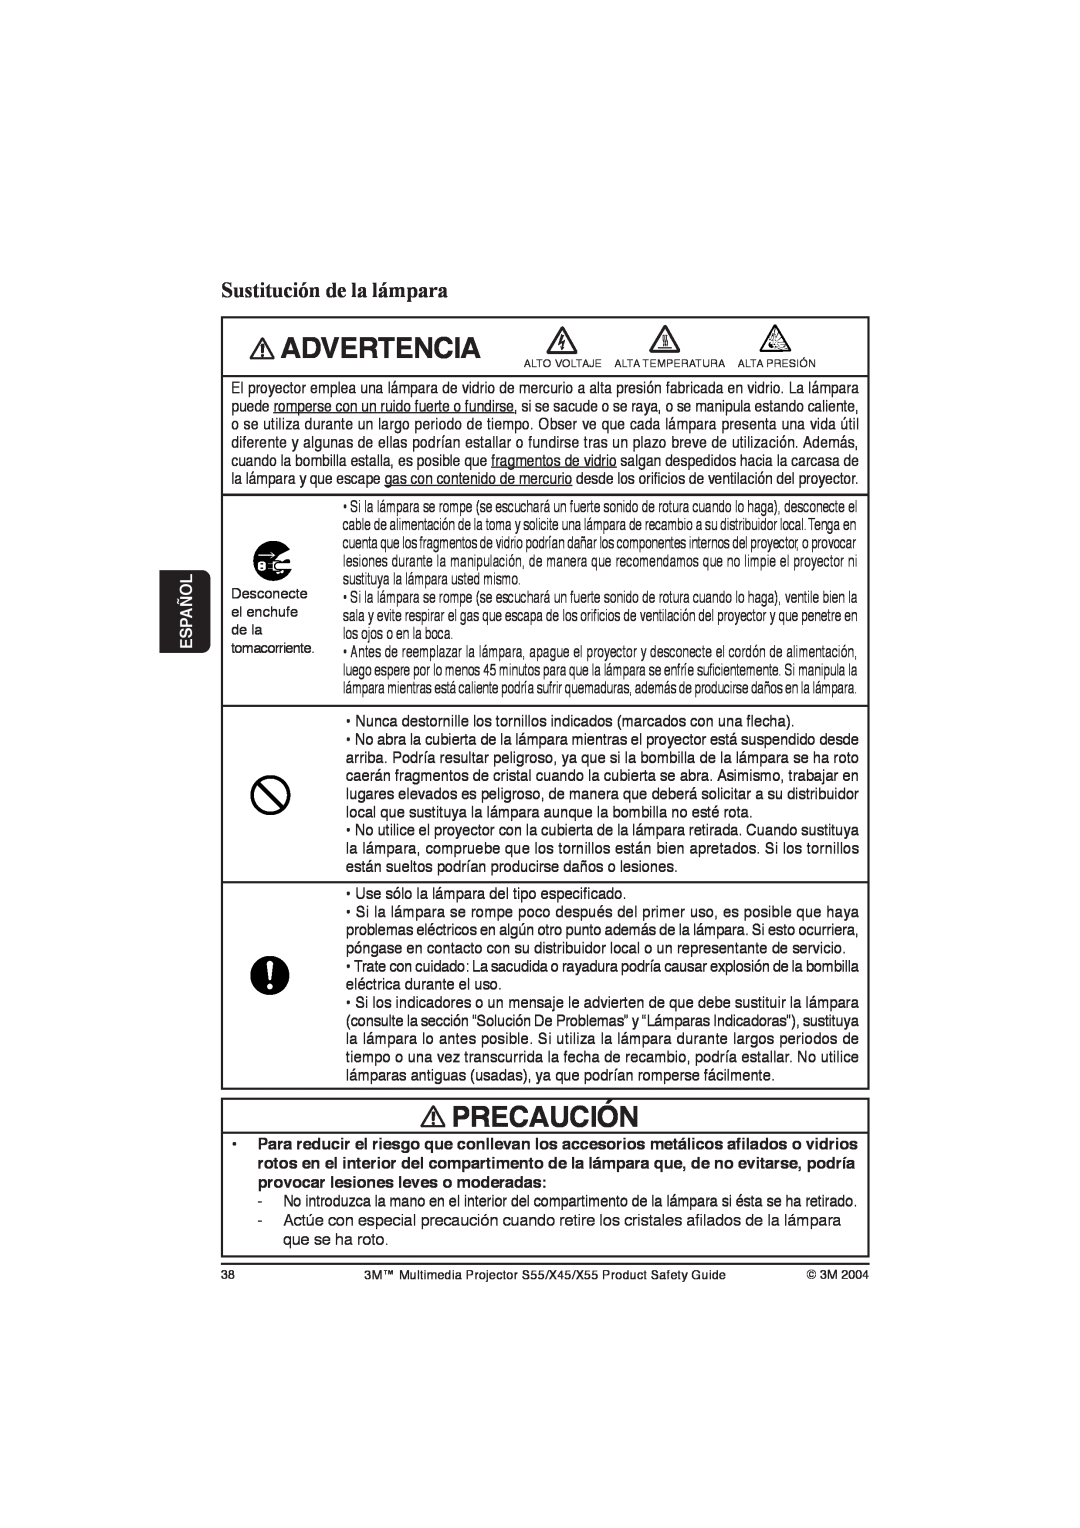 3M X55, X45, S55 manual Sustitución de la lámpara, Advertencia, Precaución, Español, sustituya la lámpara usted mismo 